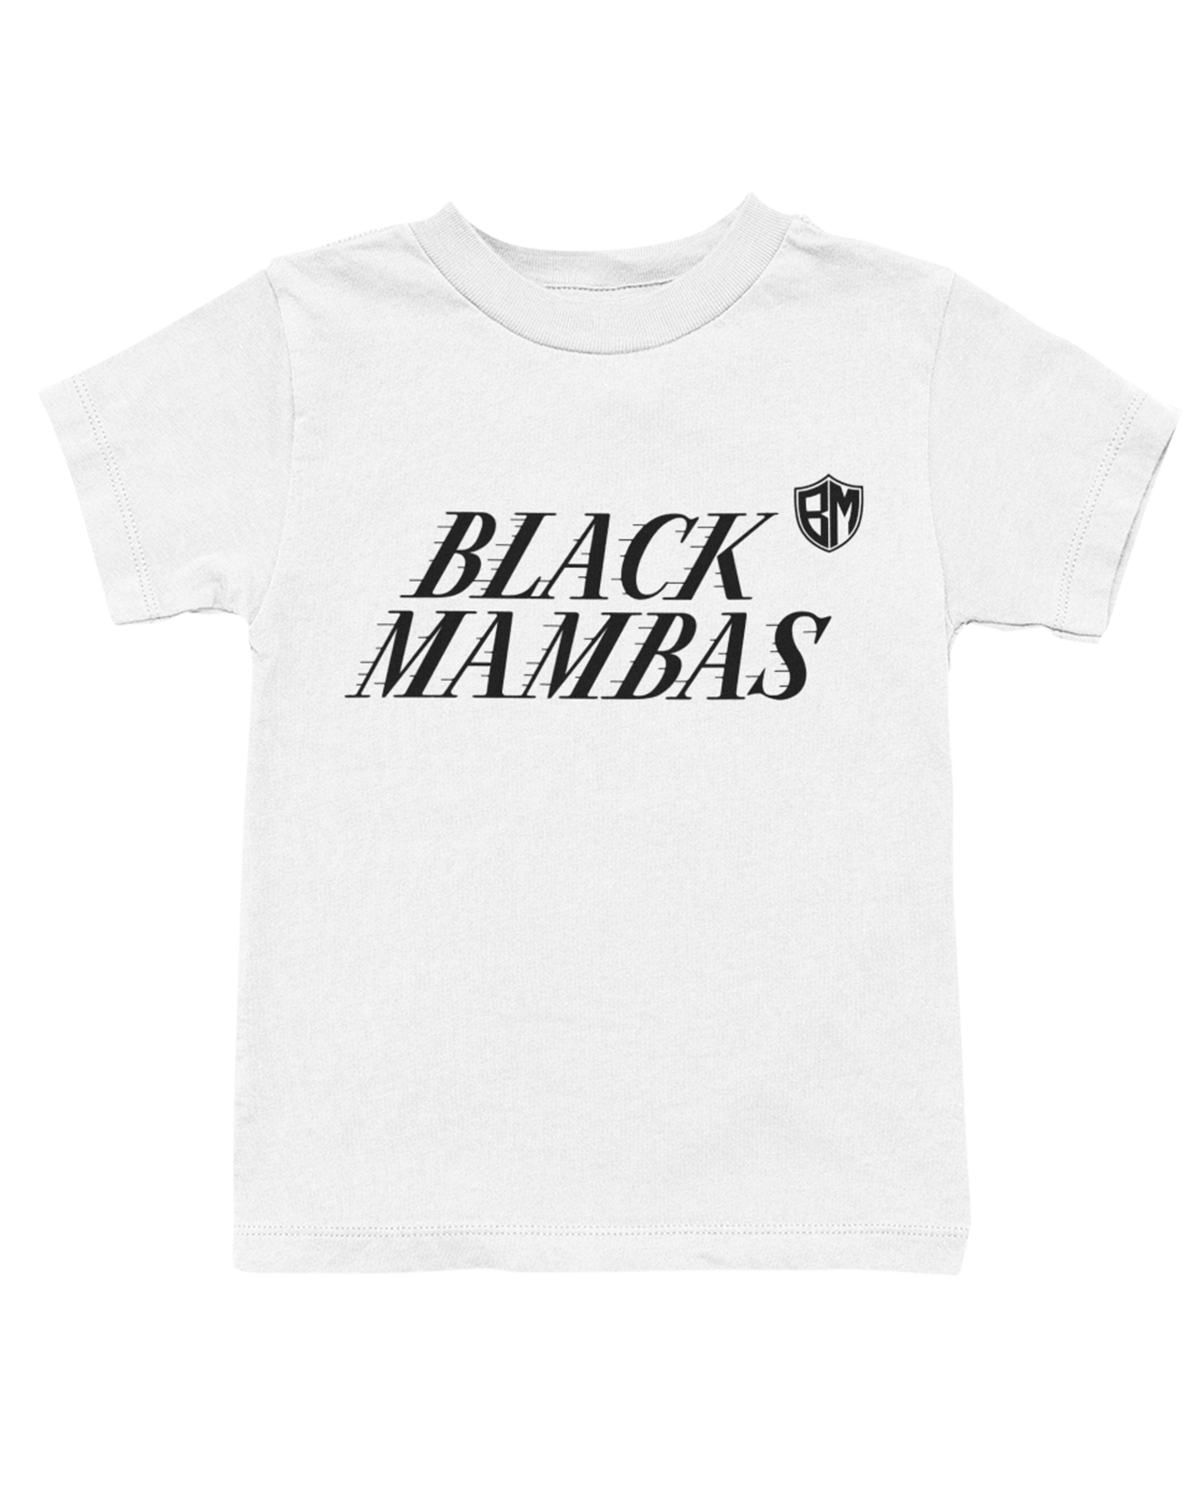 Black Mambas Kids Shirts